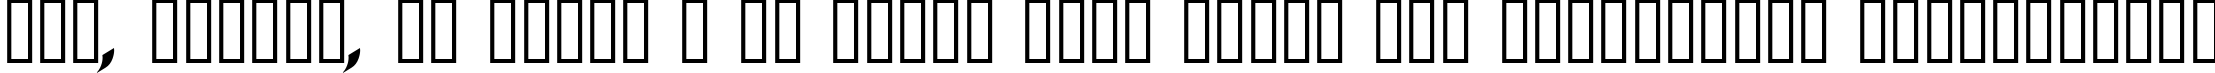 Пример написания шрифтом Three Arrows Italic текста на украинском